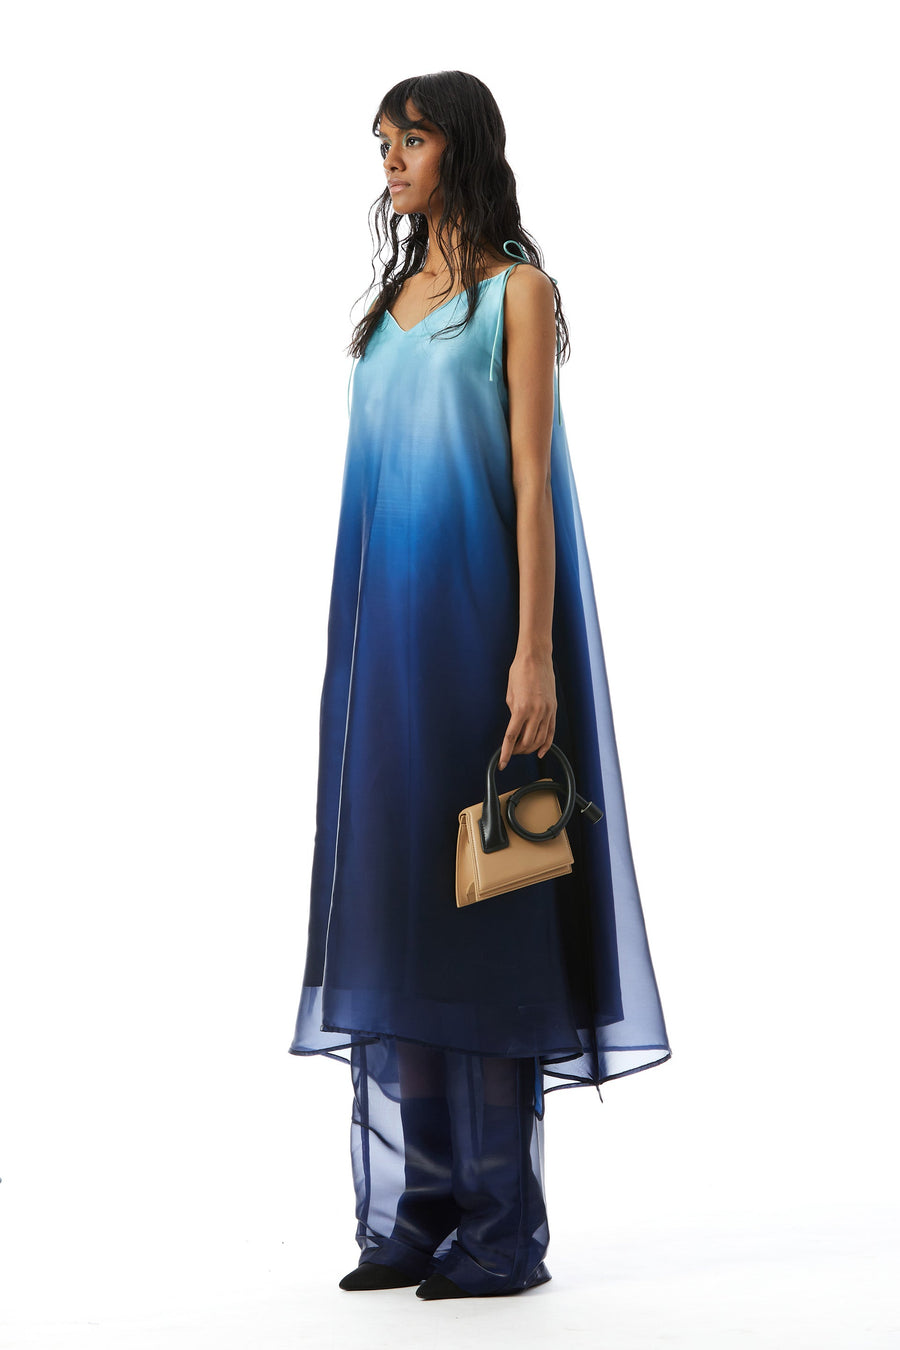 'Seafret' Ombre Dress - Kanika Goyal Label